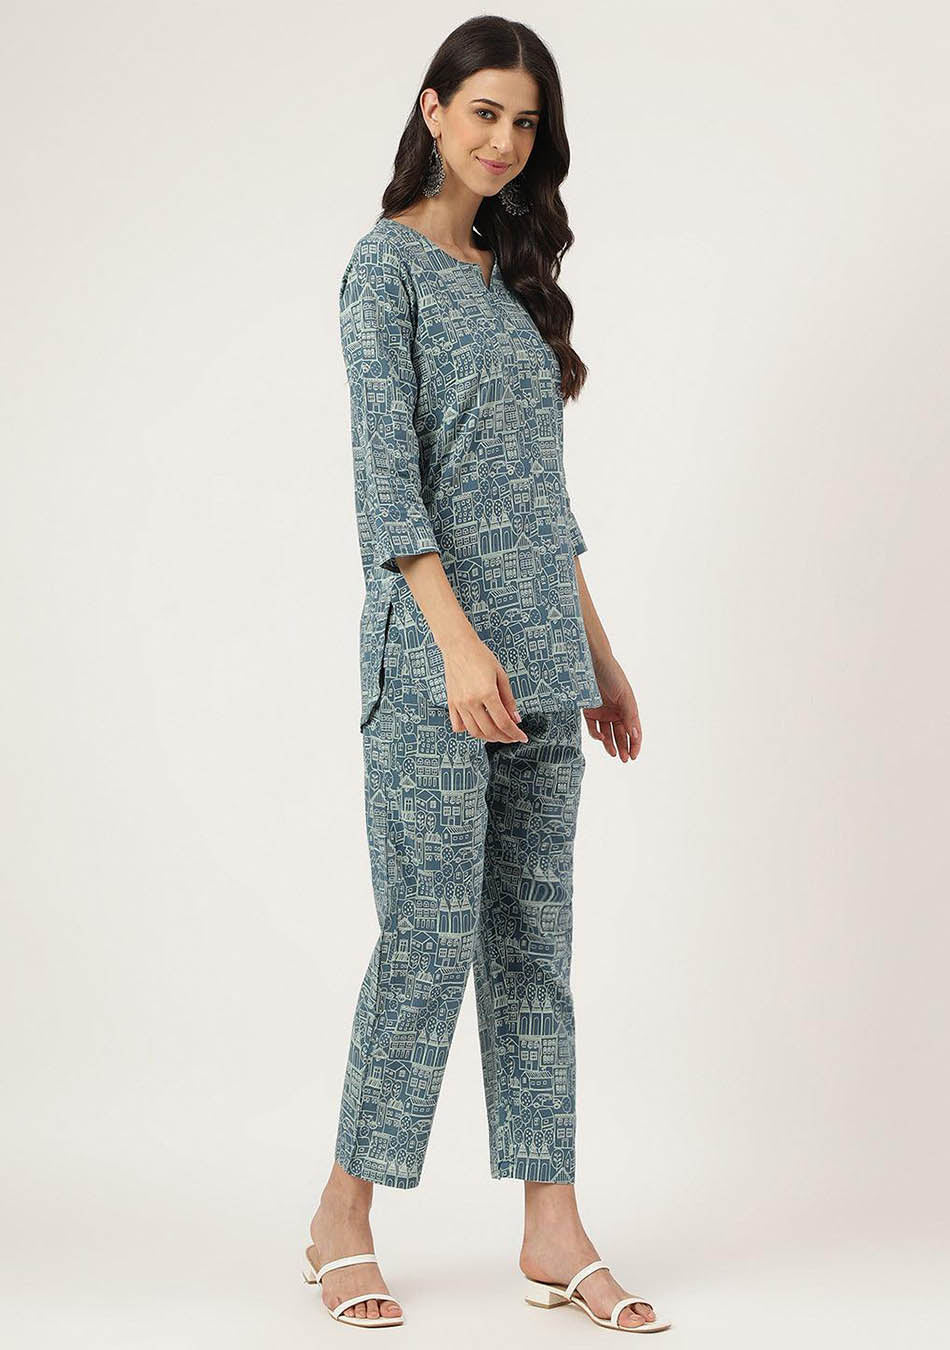 Teal Blue Printed Loungewear/Nightwear